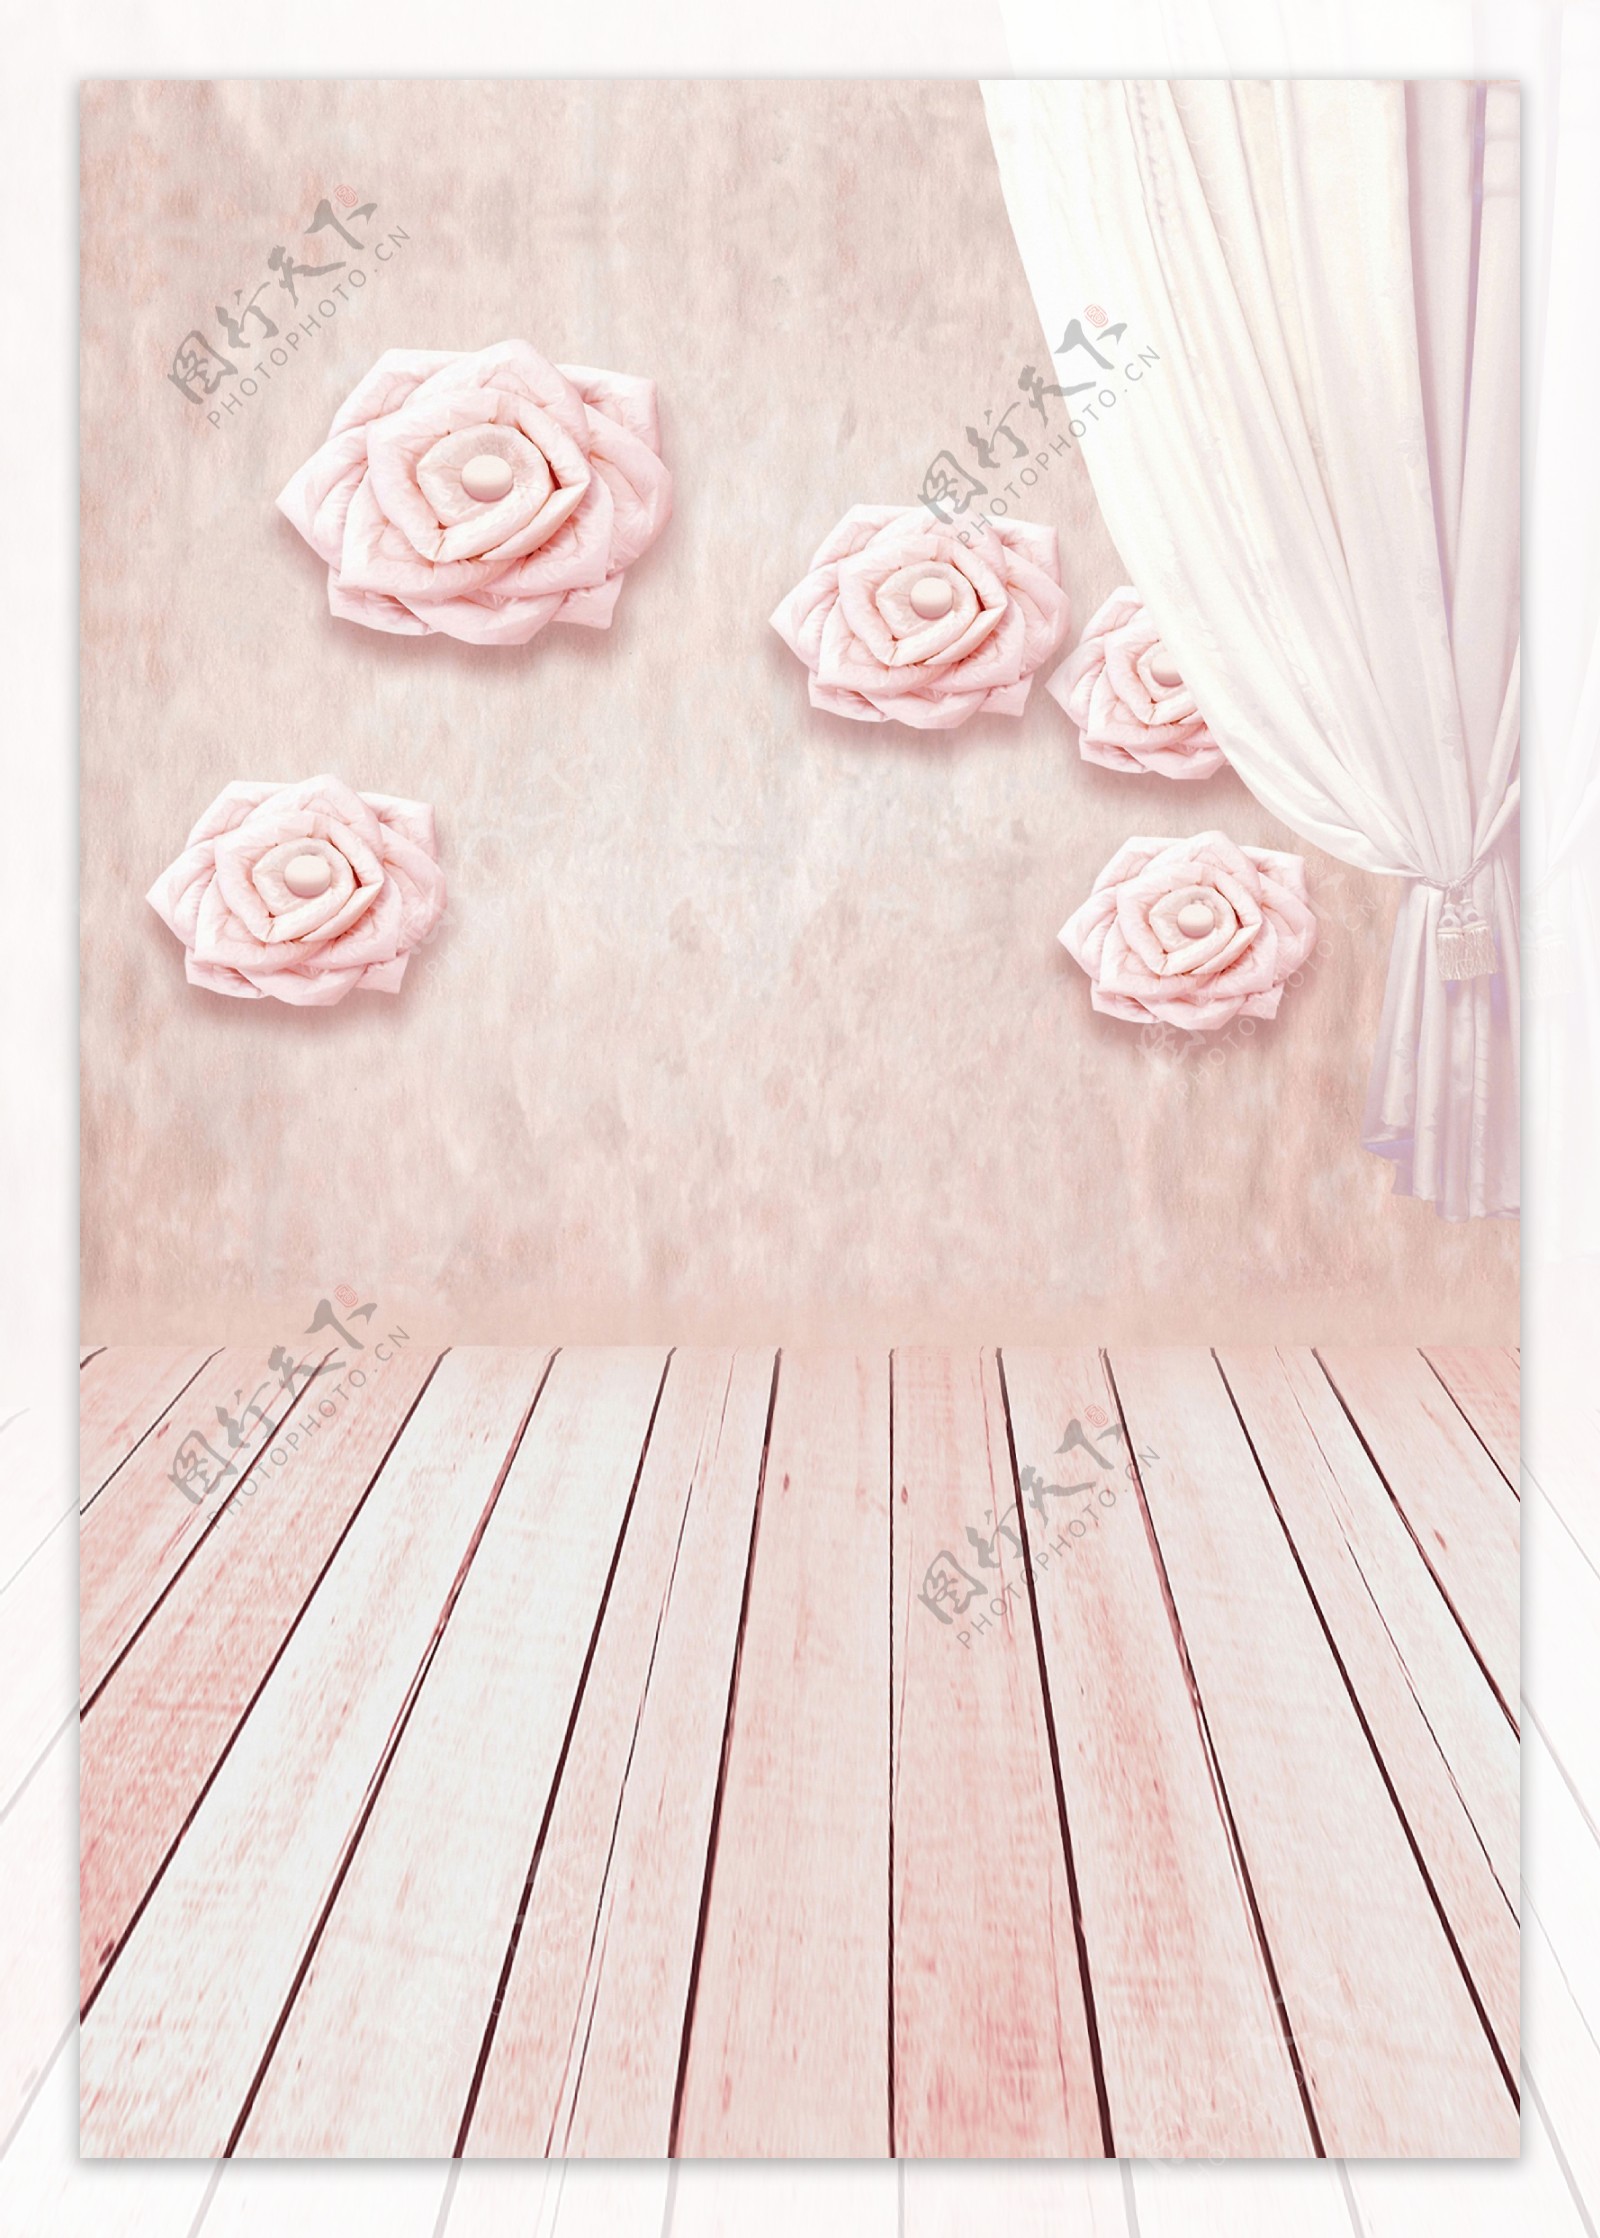 布帘与墙上的花饰影楼摄影背景图片